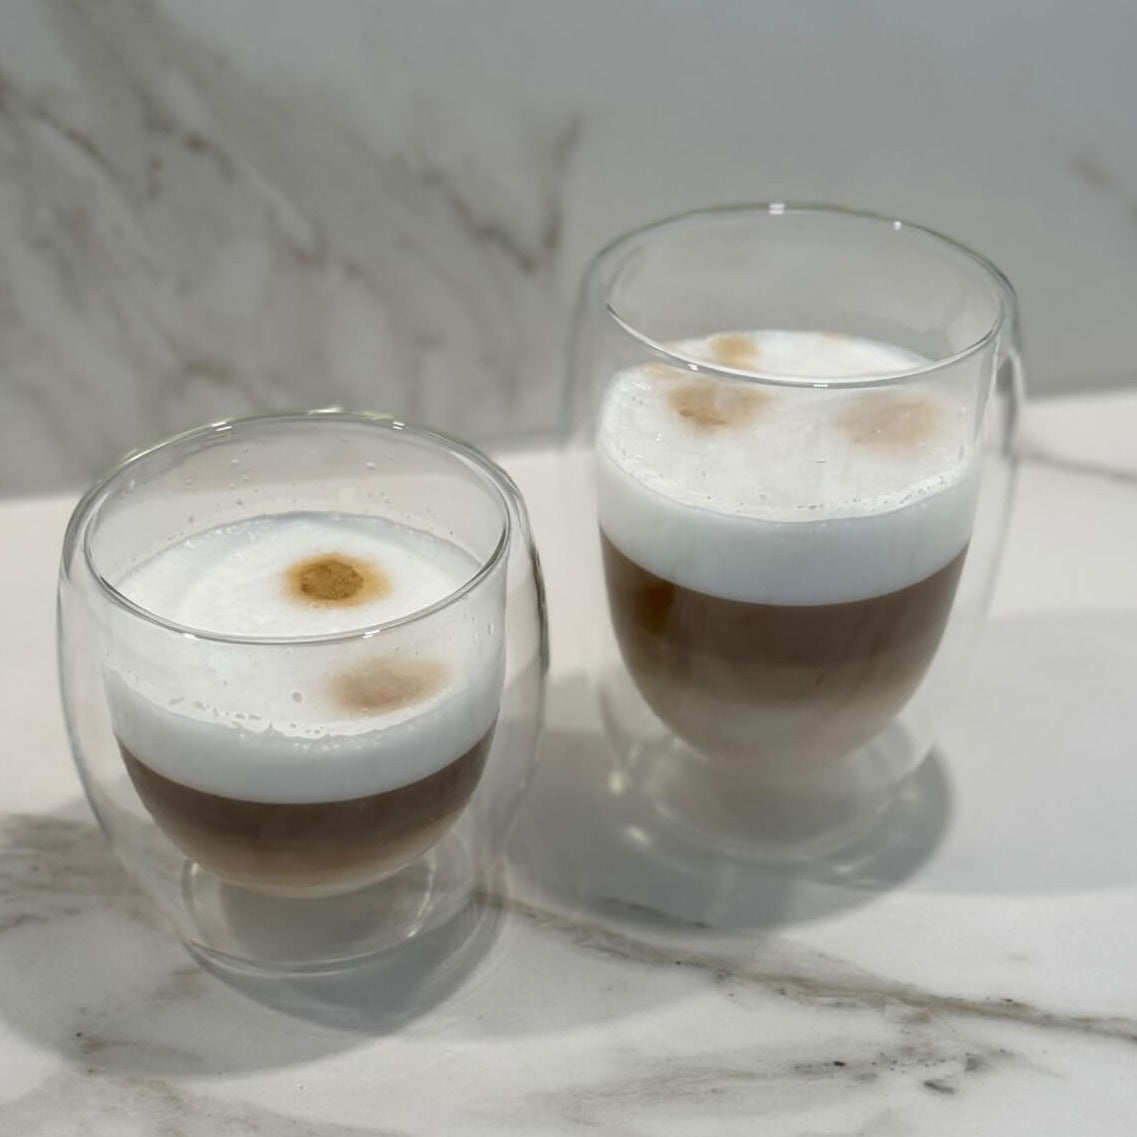 Unser Double Wall Glas 250ml mit doppelwandigem Design, gefüllt mit Cappuccino, auf einem Tisch. Dieses hochwertige, stilvolle und modern designte Trinkglas bietet ein einzigartiges, ästhetisches Trinkgefühl. Perfekt für kalte und heiße Getränke, wie Kaffee und Cappuccino. Ein attraktiver und edler Blickfang, der Luxus und Eleganz in jede Umgebung bringt. Ideal für den täglichen Genuss oder besondere Anlässe.